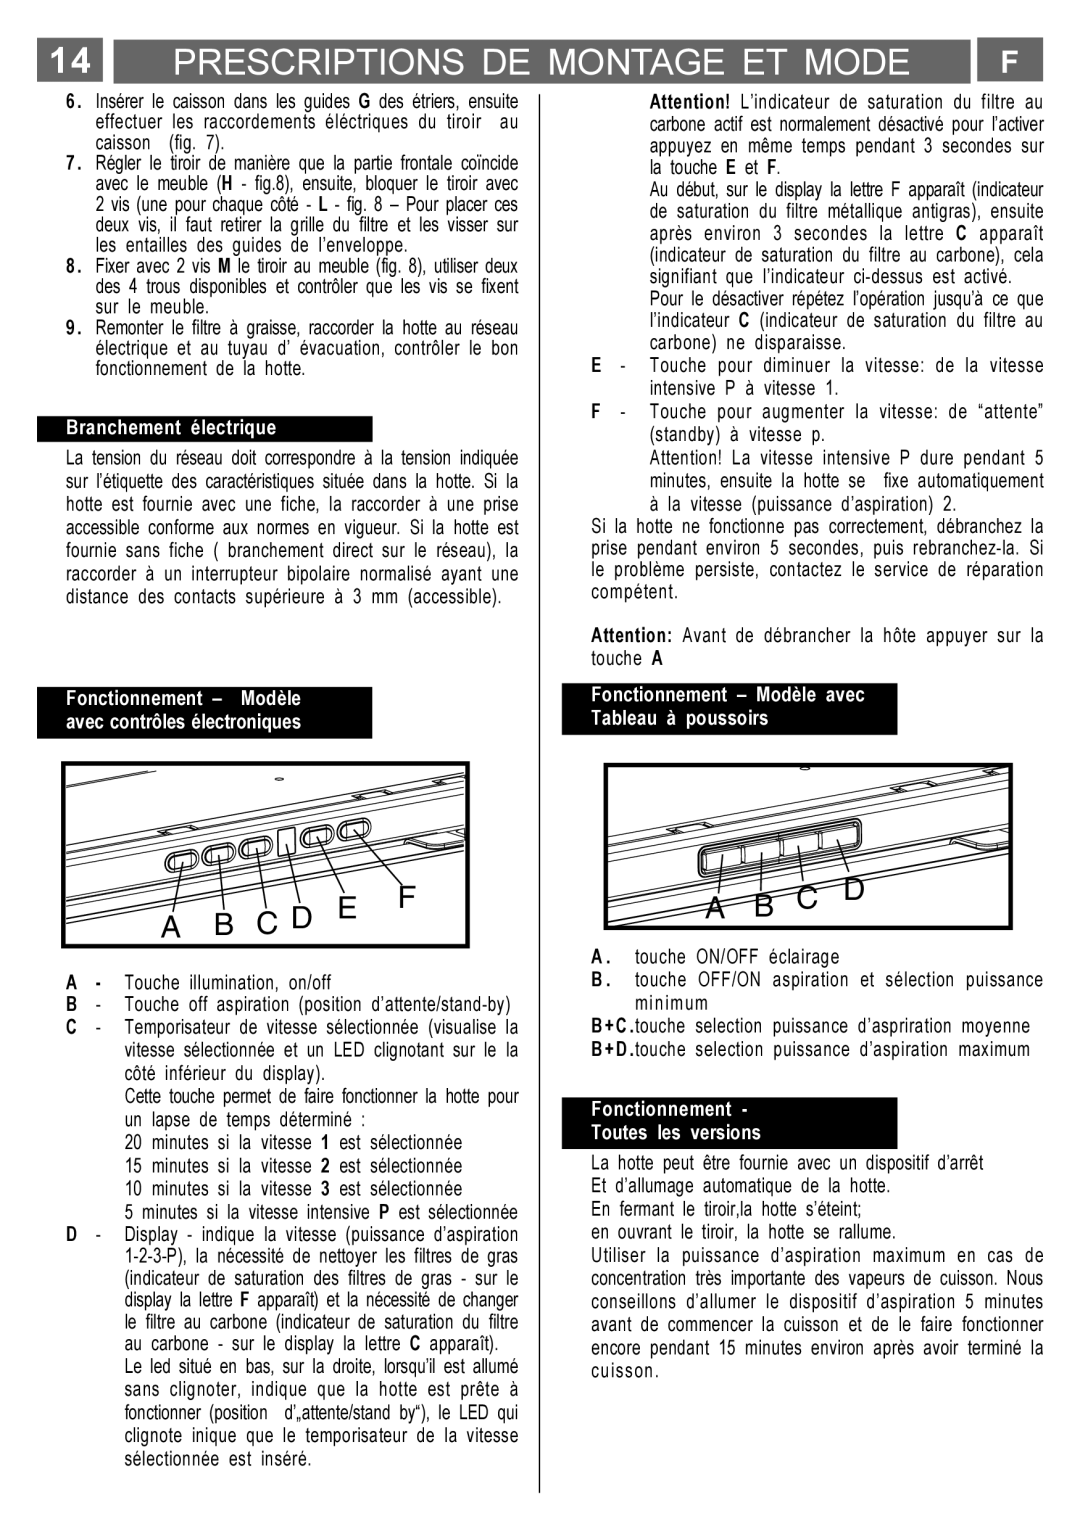 Smeg KSET650X manual Prescriptions De Montage Et Mode, A B C D, Branchement électrique, Fonctionnement, Modèle 